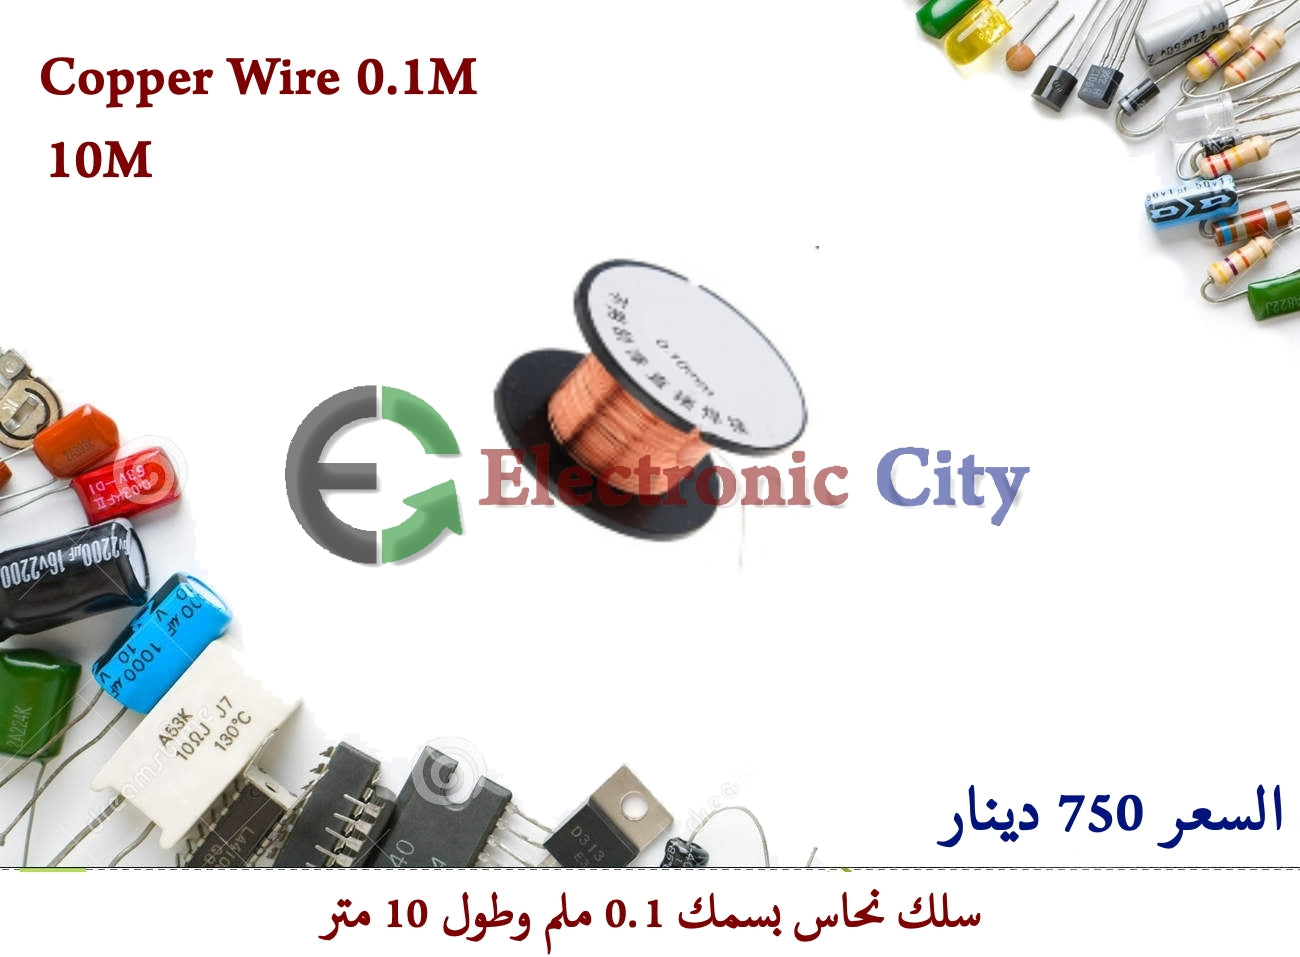 Copper Wire 0.1M #C5. 030037